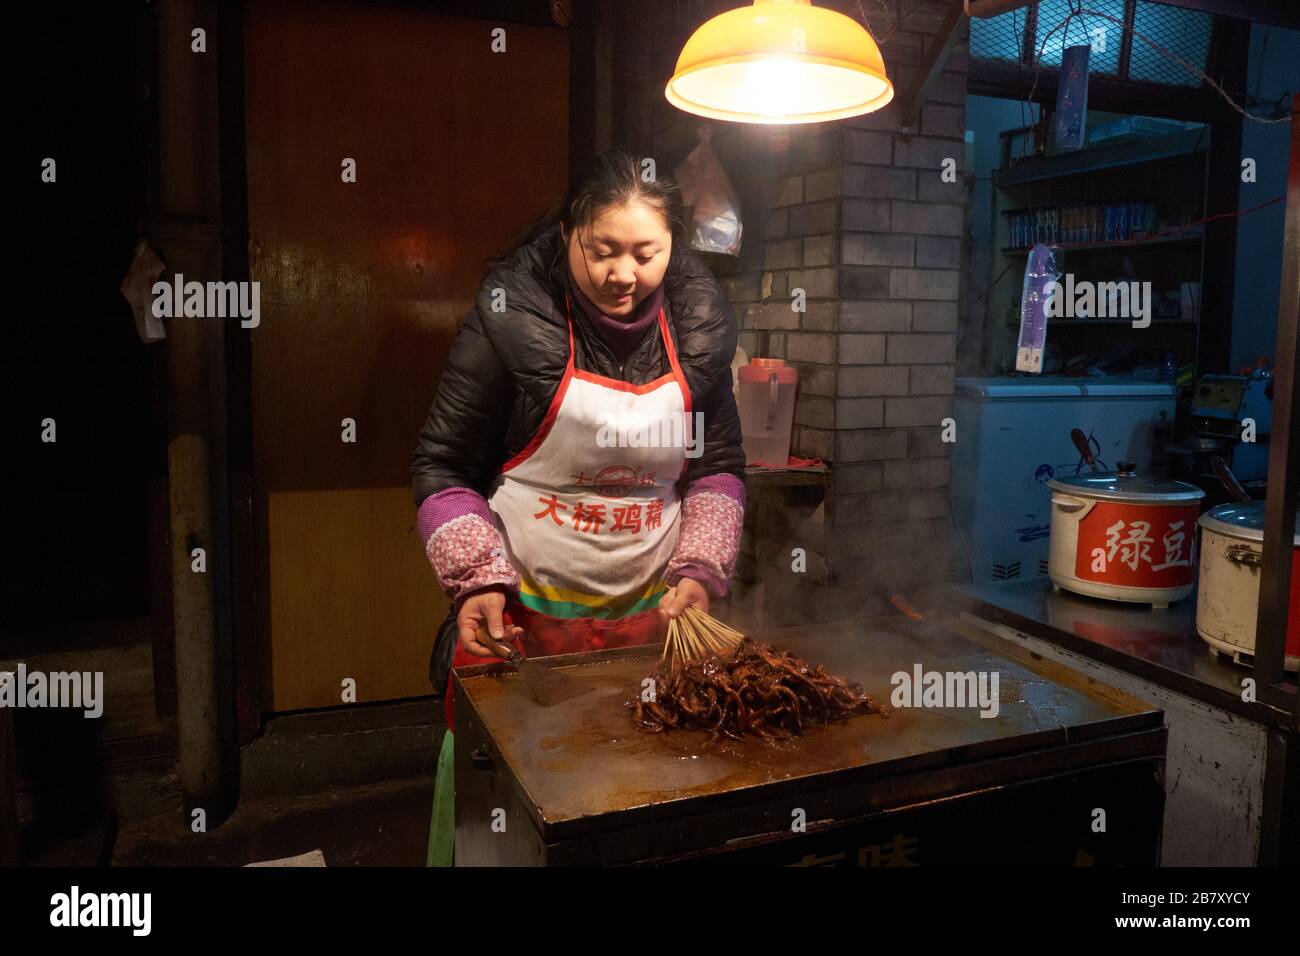 Wuhan, Chine dans la province de Hubei, tourné en 2013, montrant des stallporteurs préparant et servant des aliments cuits. Banque D'Images